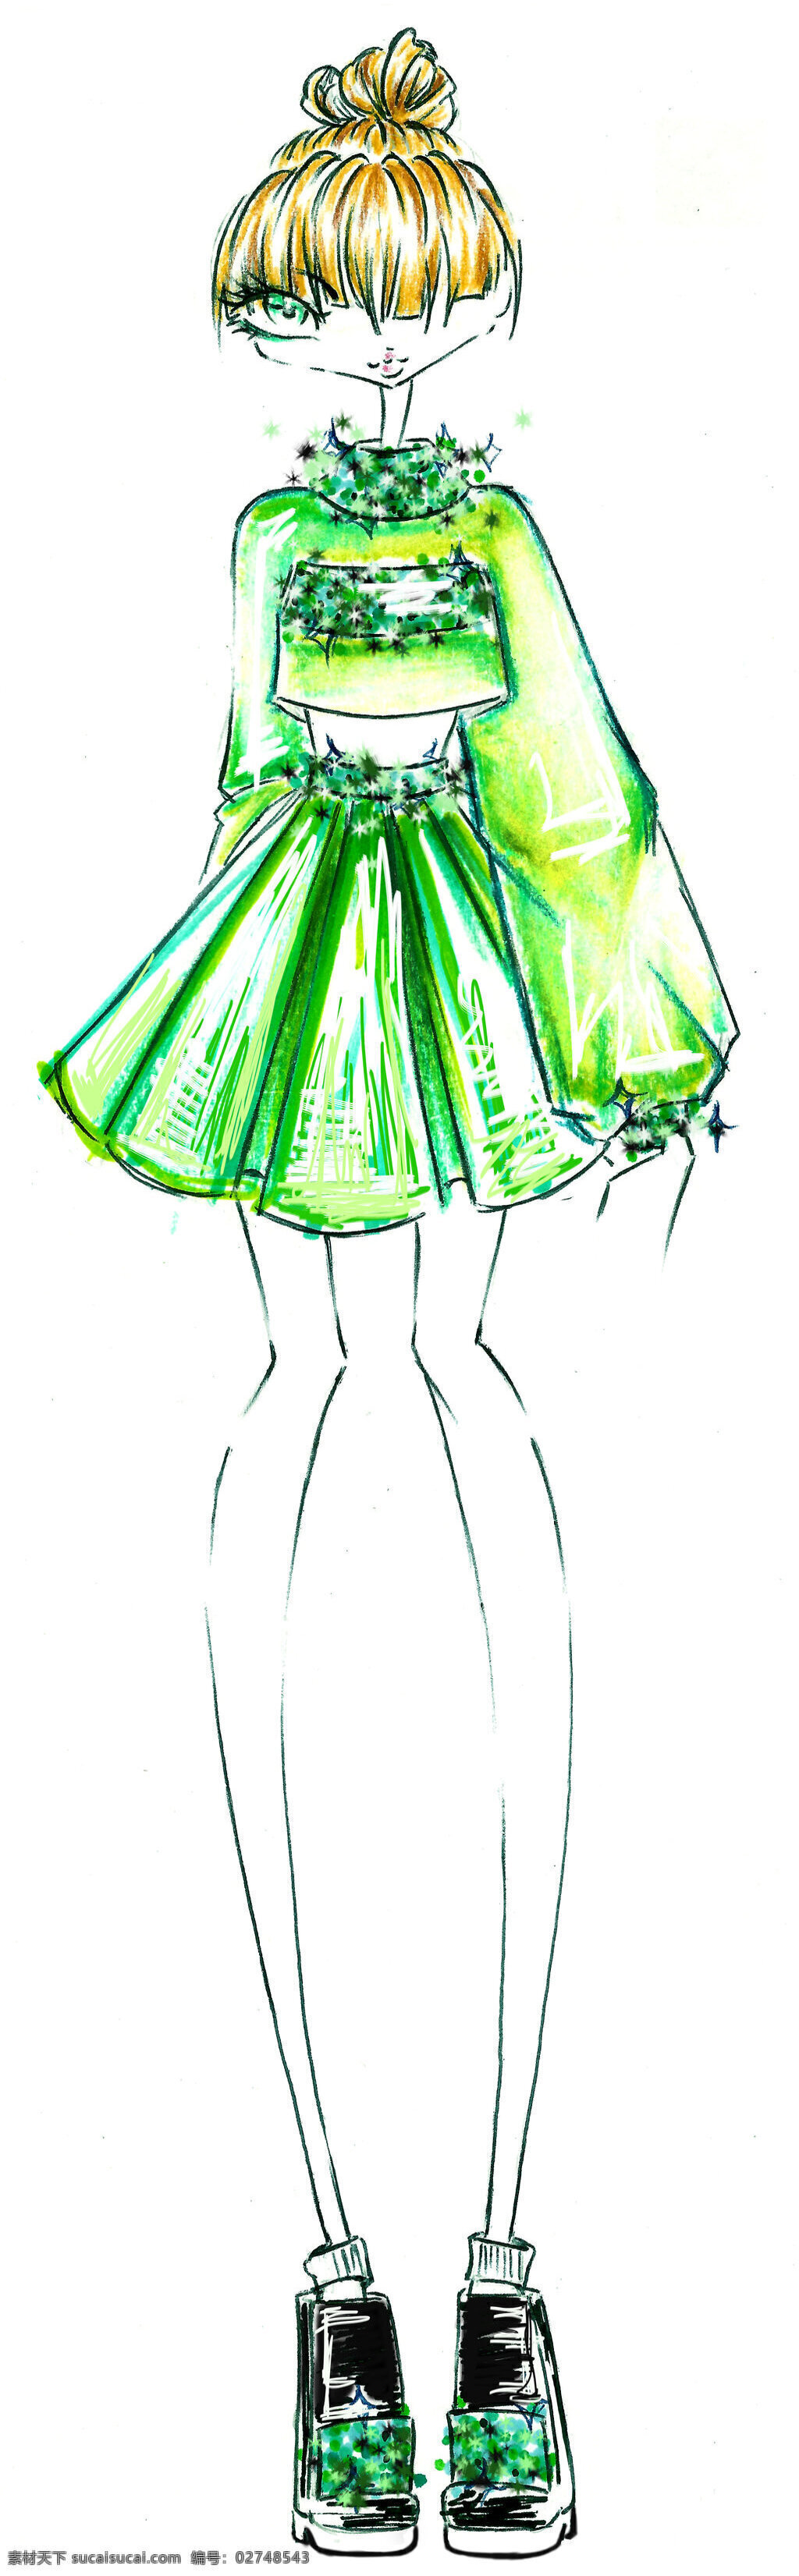 绿色 蓬 裙 设计图 服装设计 时尚女装 职业女装 职业装 女装设计 效果图 短裙 衬衫 服装 服装效果图 蓬蓬裙